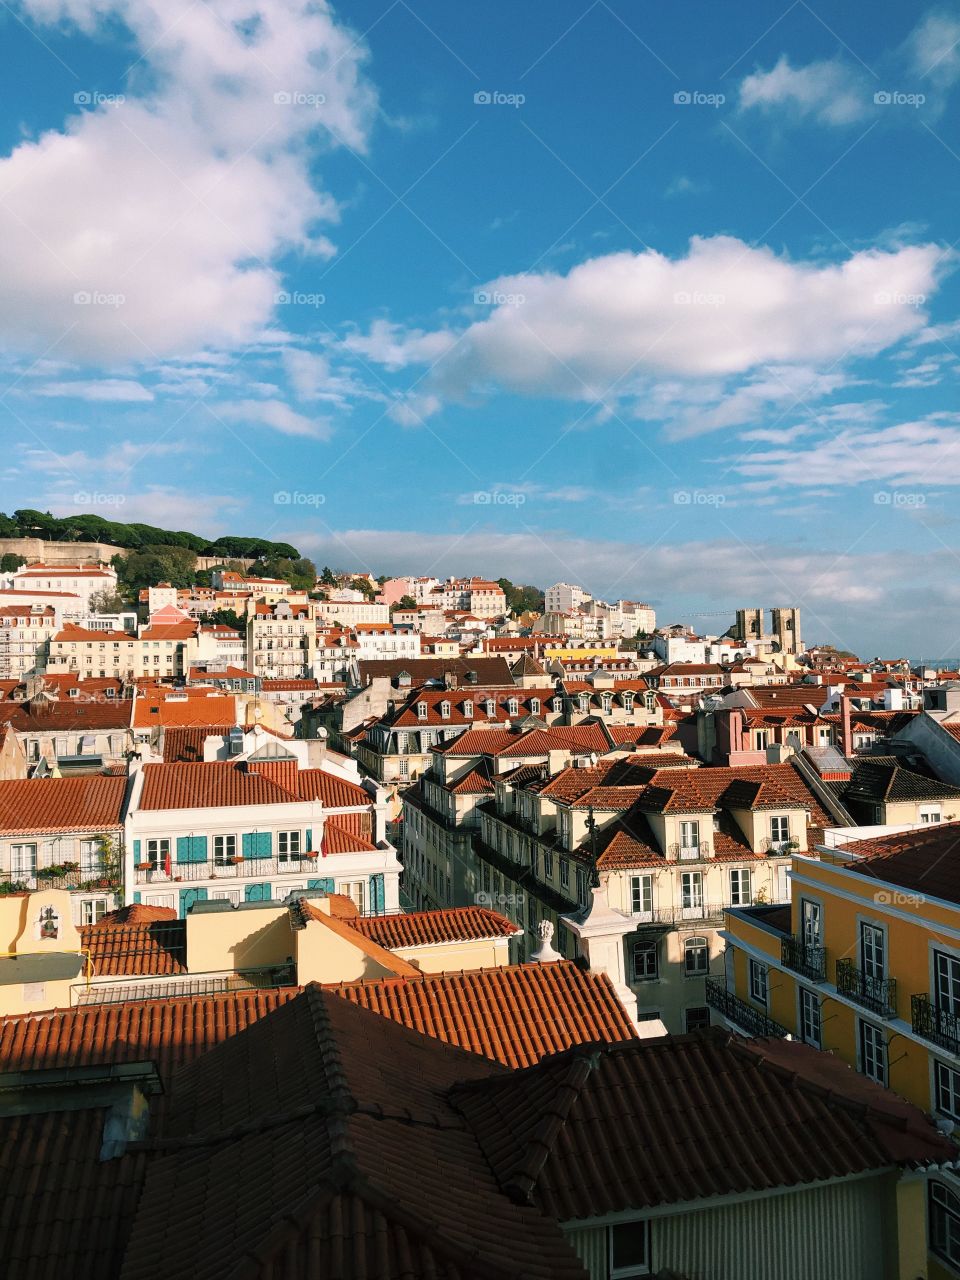 Armazéns do Chiado, Lisboa